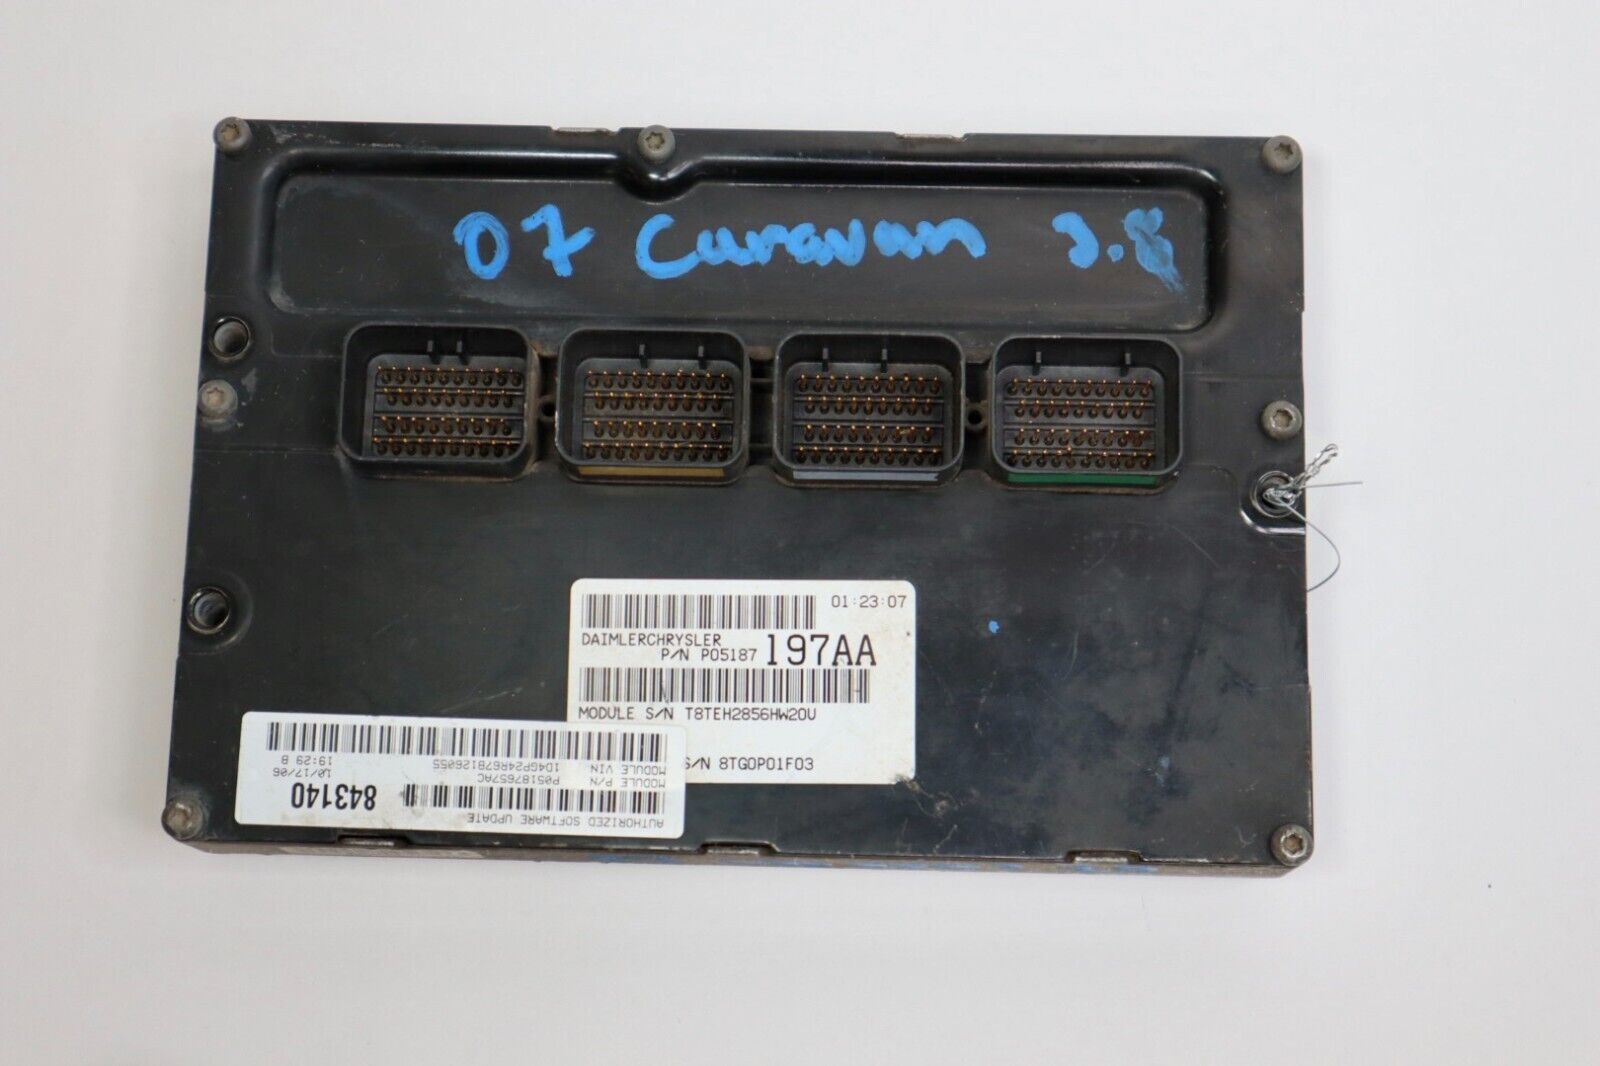 2007 DODGE CARAVAN 3.8L ENGINE COMPUTER P05187197AA